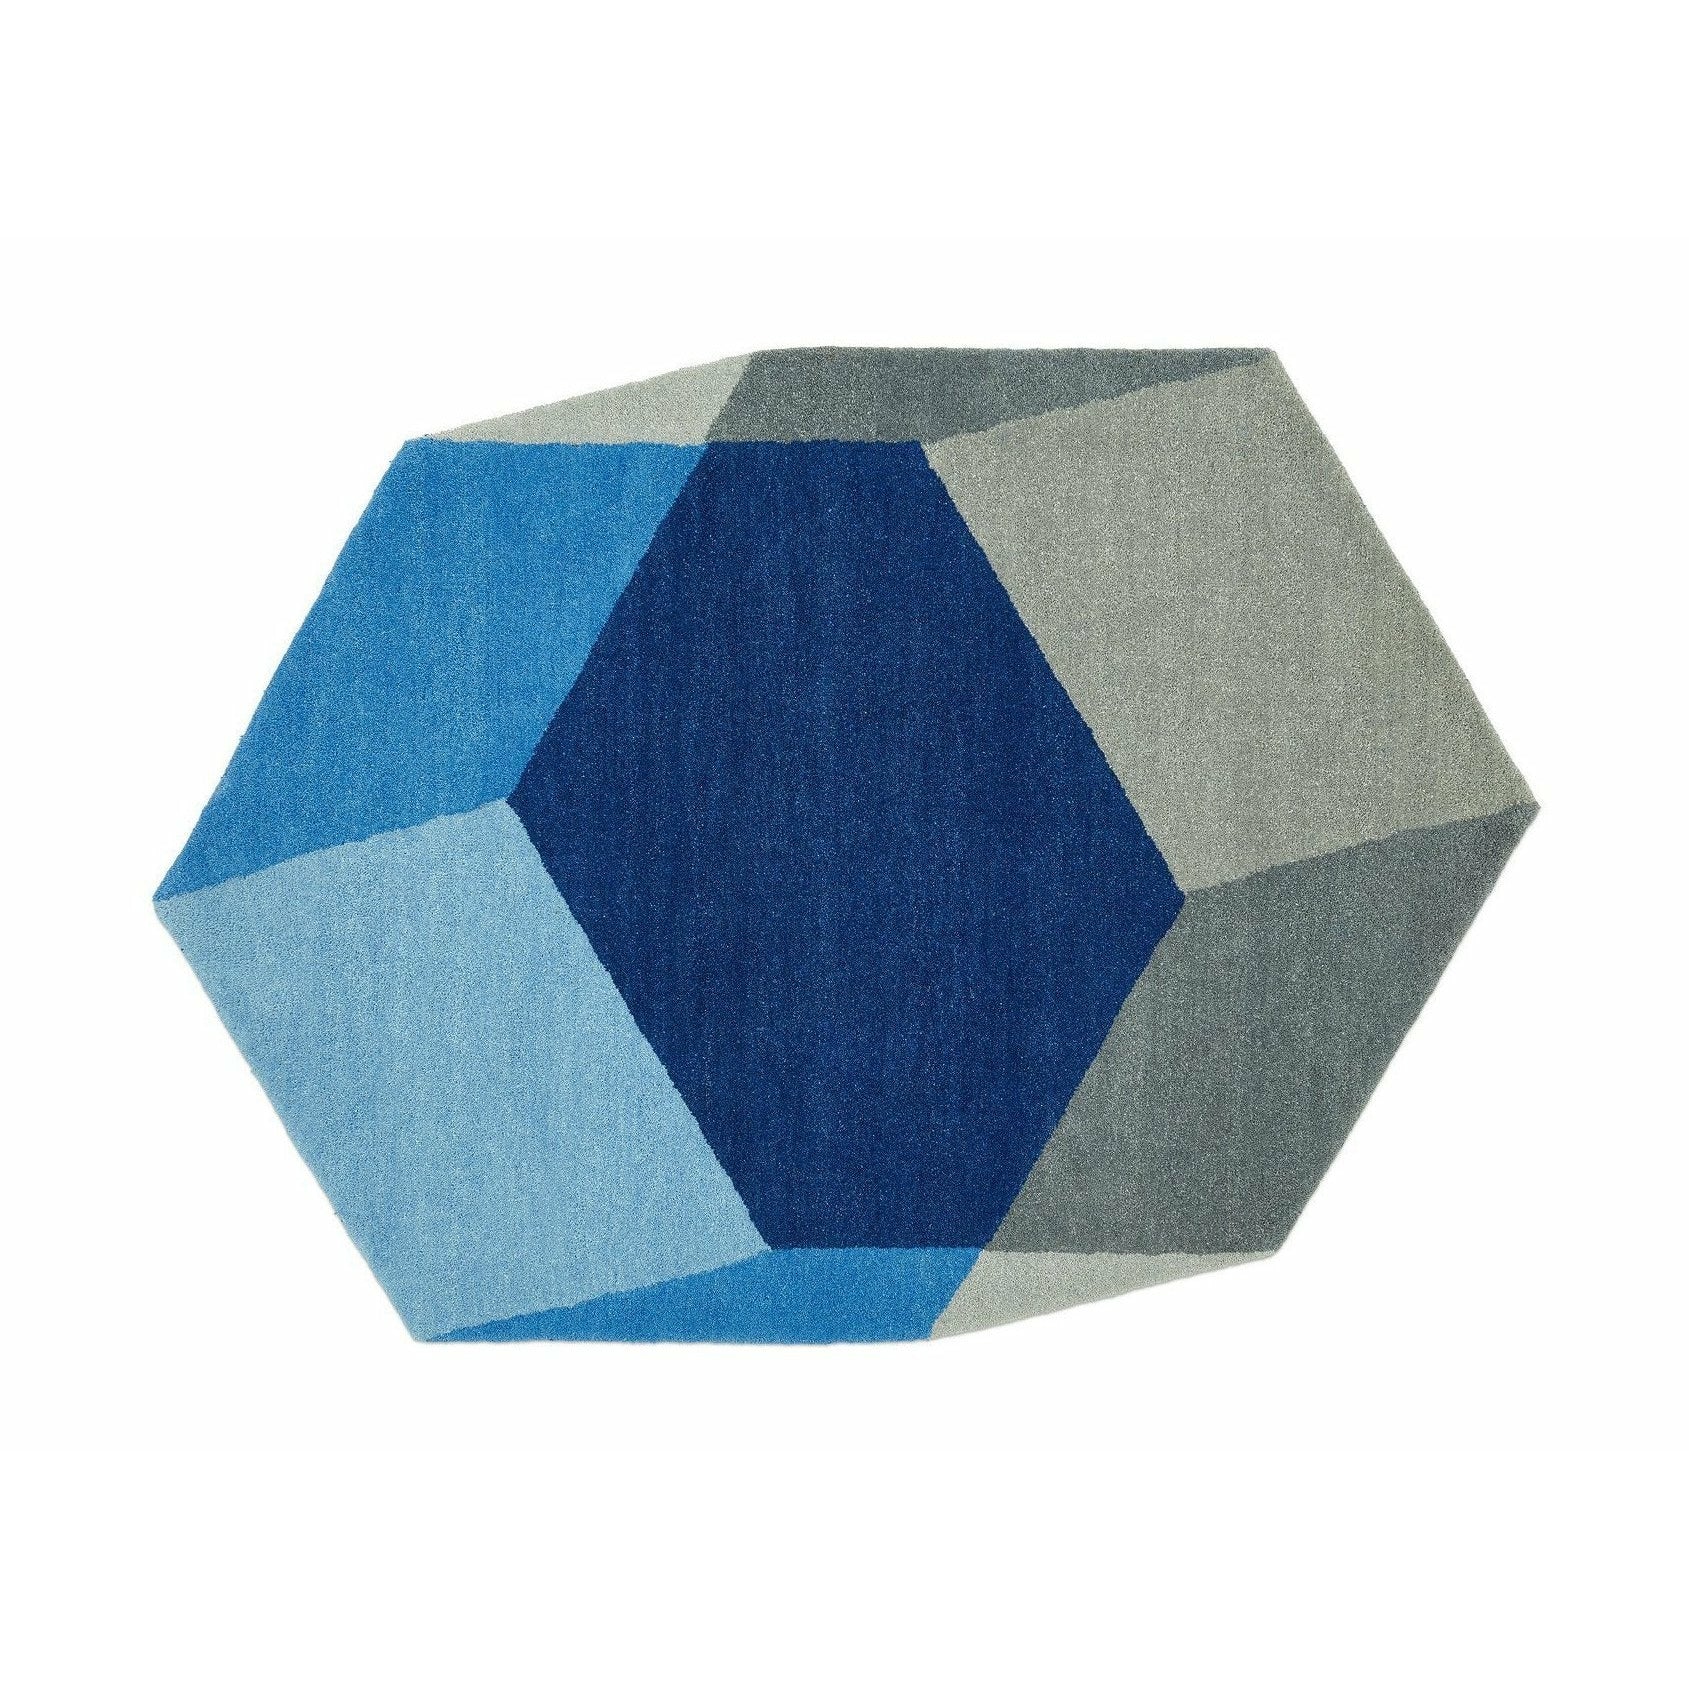 Puik Hexagon ISO Rug, bleu